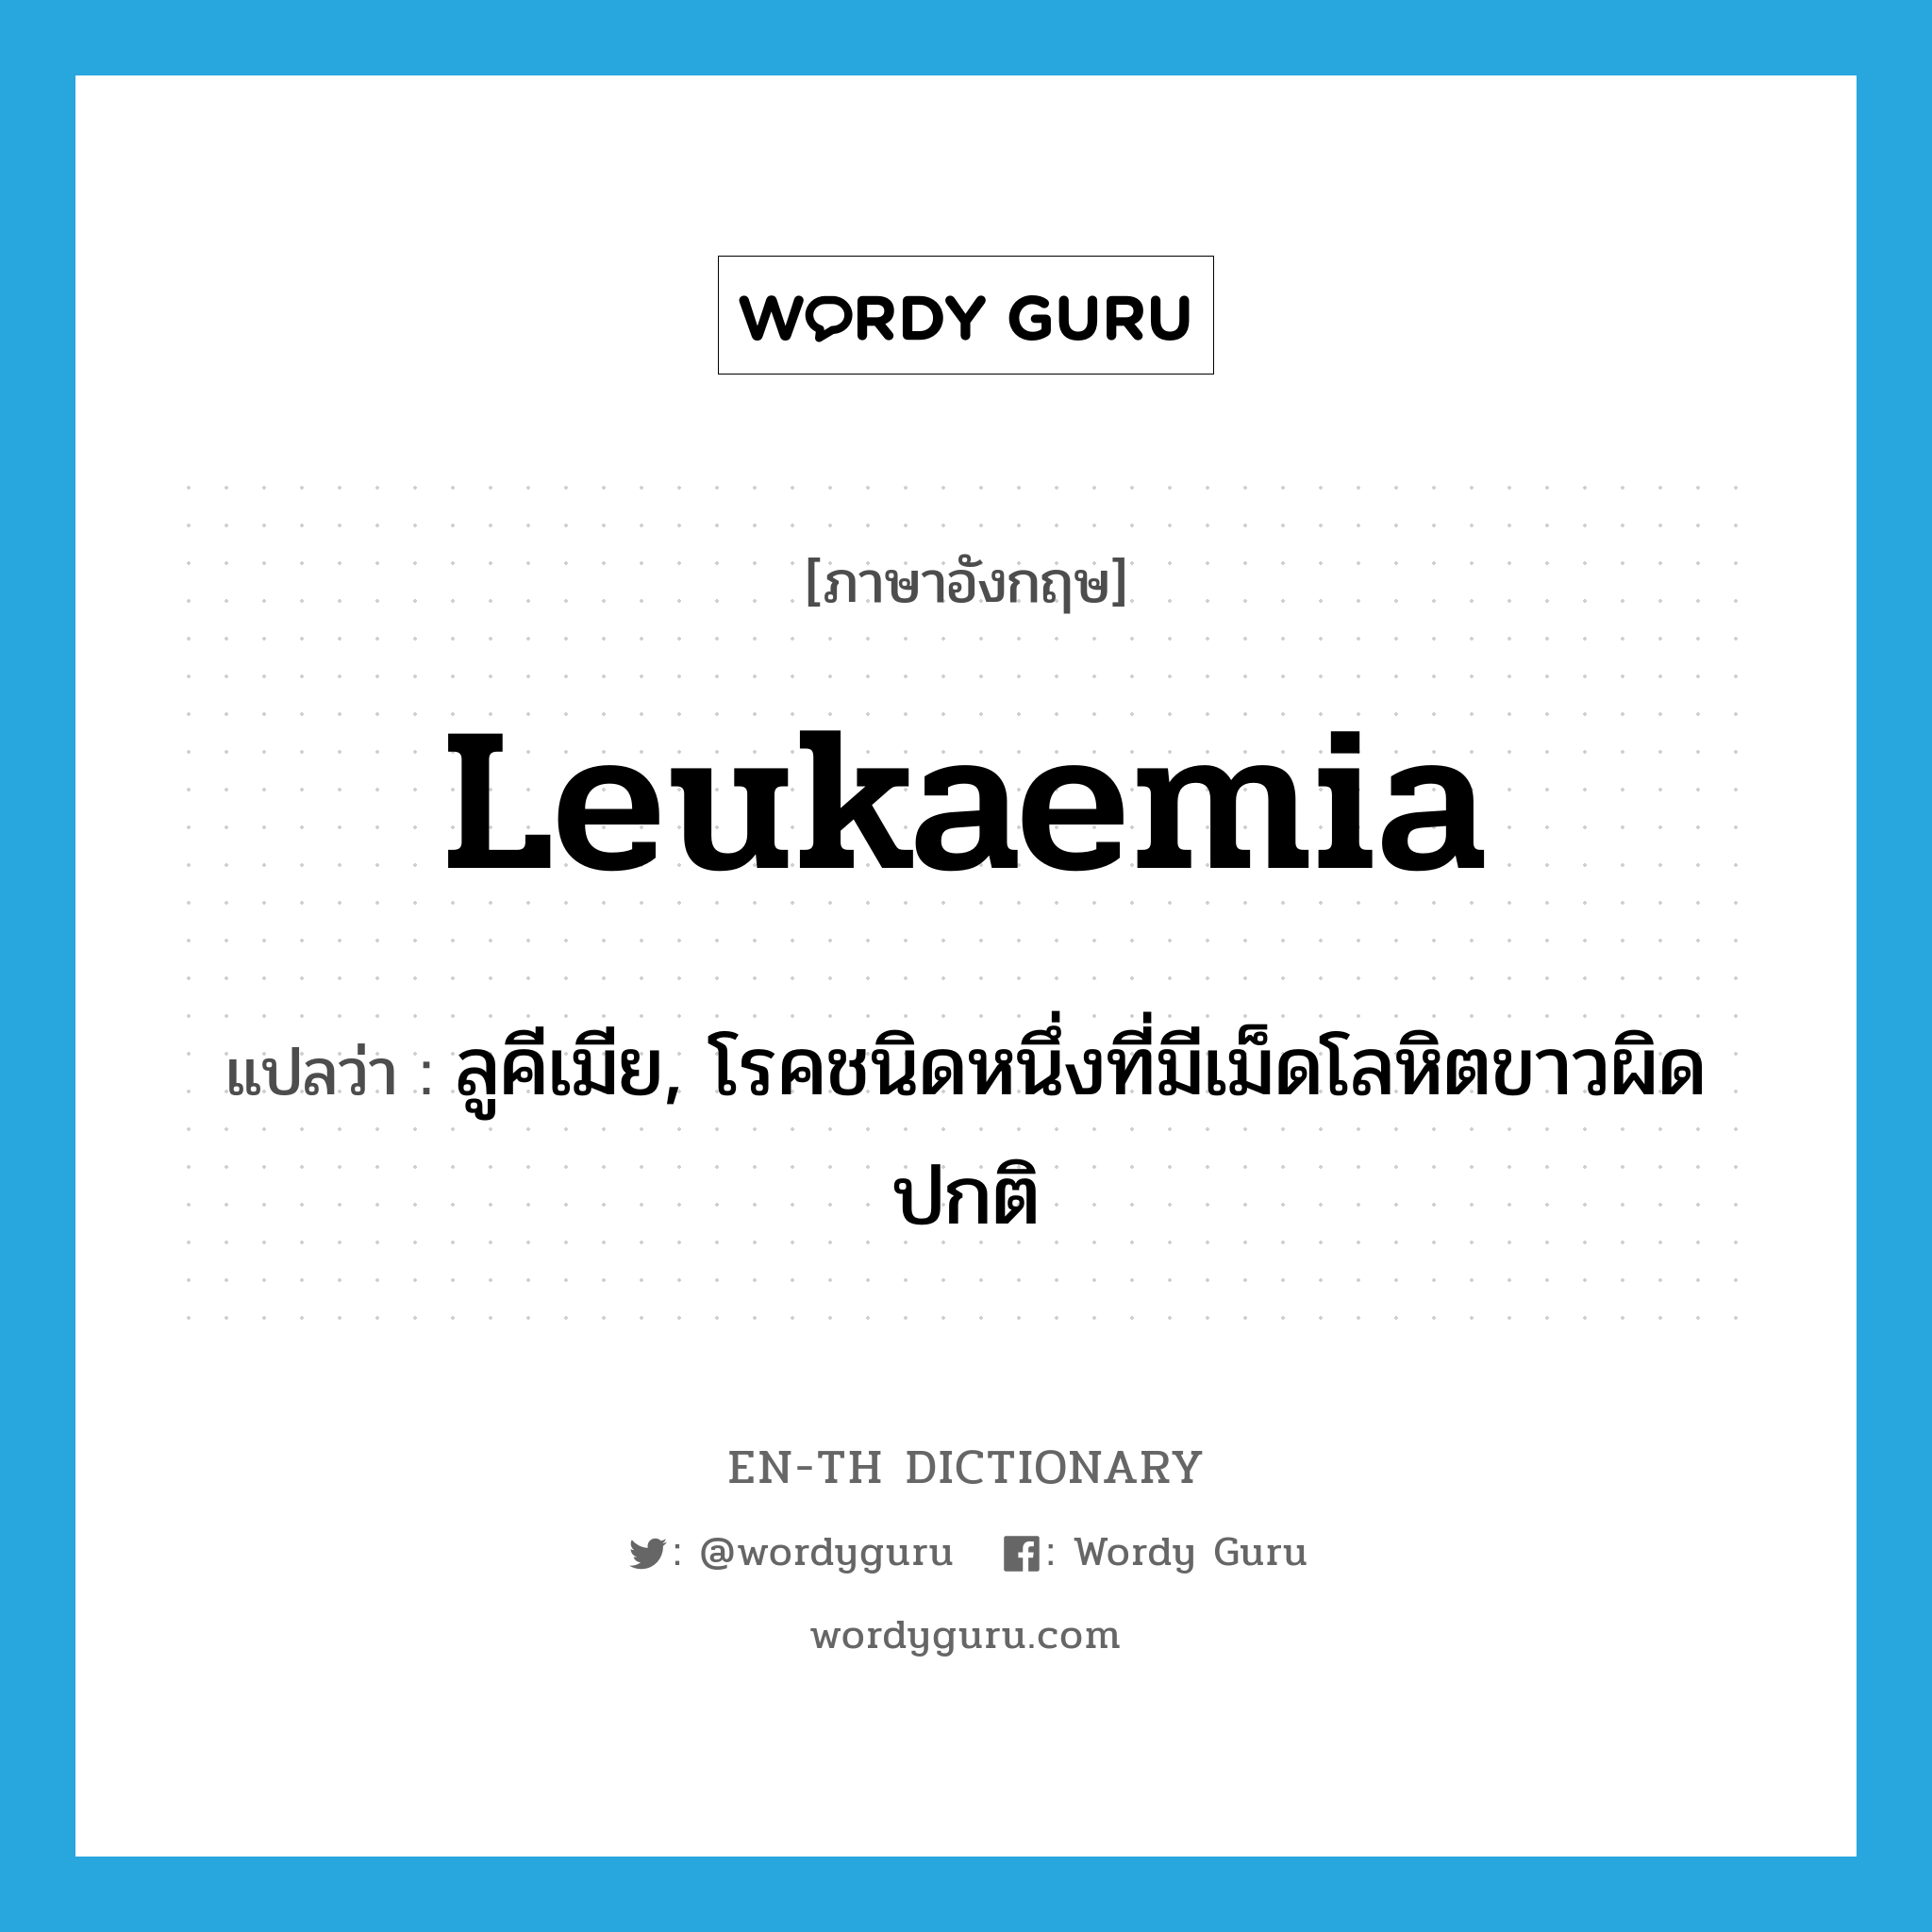 leukaemia แปลว่า?, คำศัพท์ภาษาอังกฤษ leukaemia แปลว่า ลูคีเมีย, โรคชนิดหนึ่งที่มีเม็ดโลหิตขาวผิดปกติ ประเภท N หมวด N